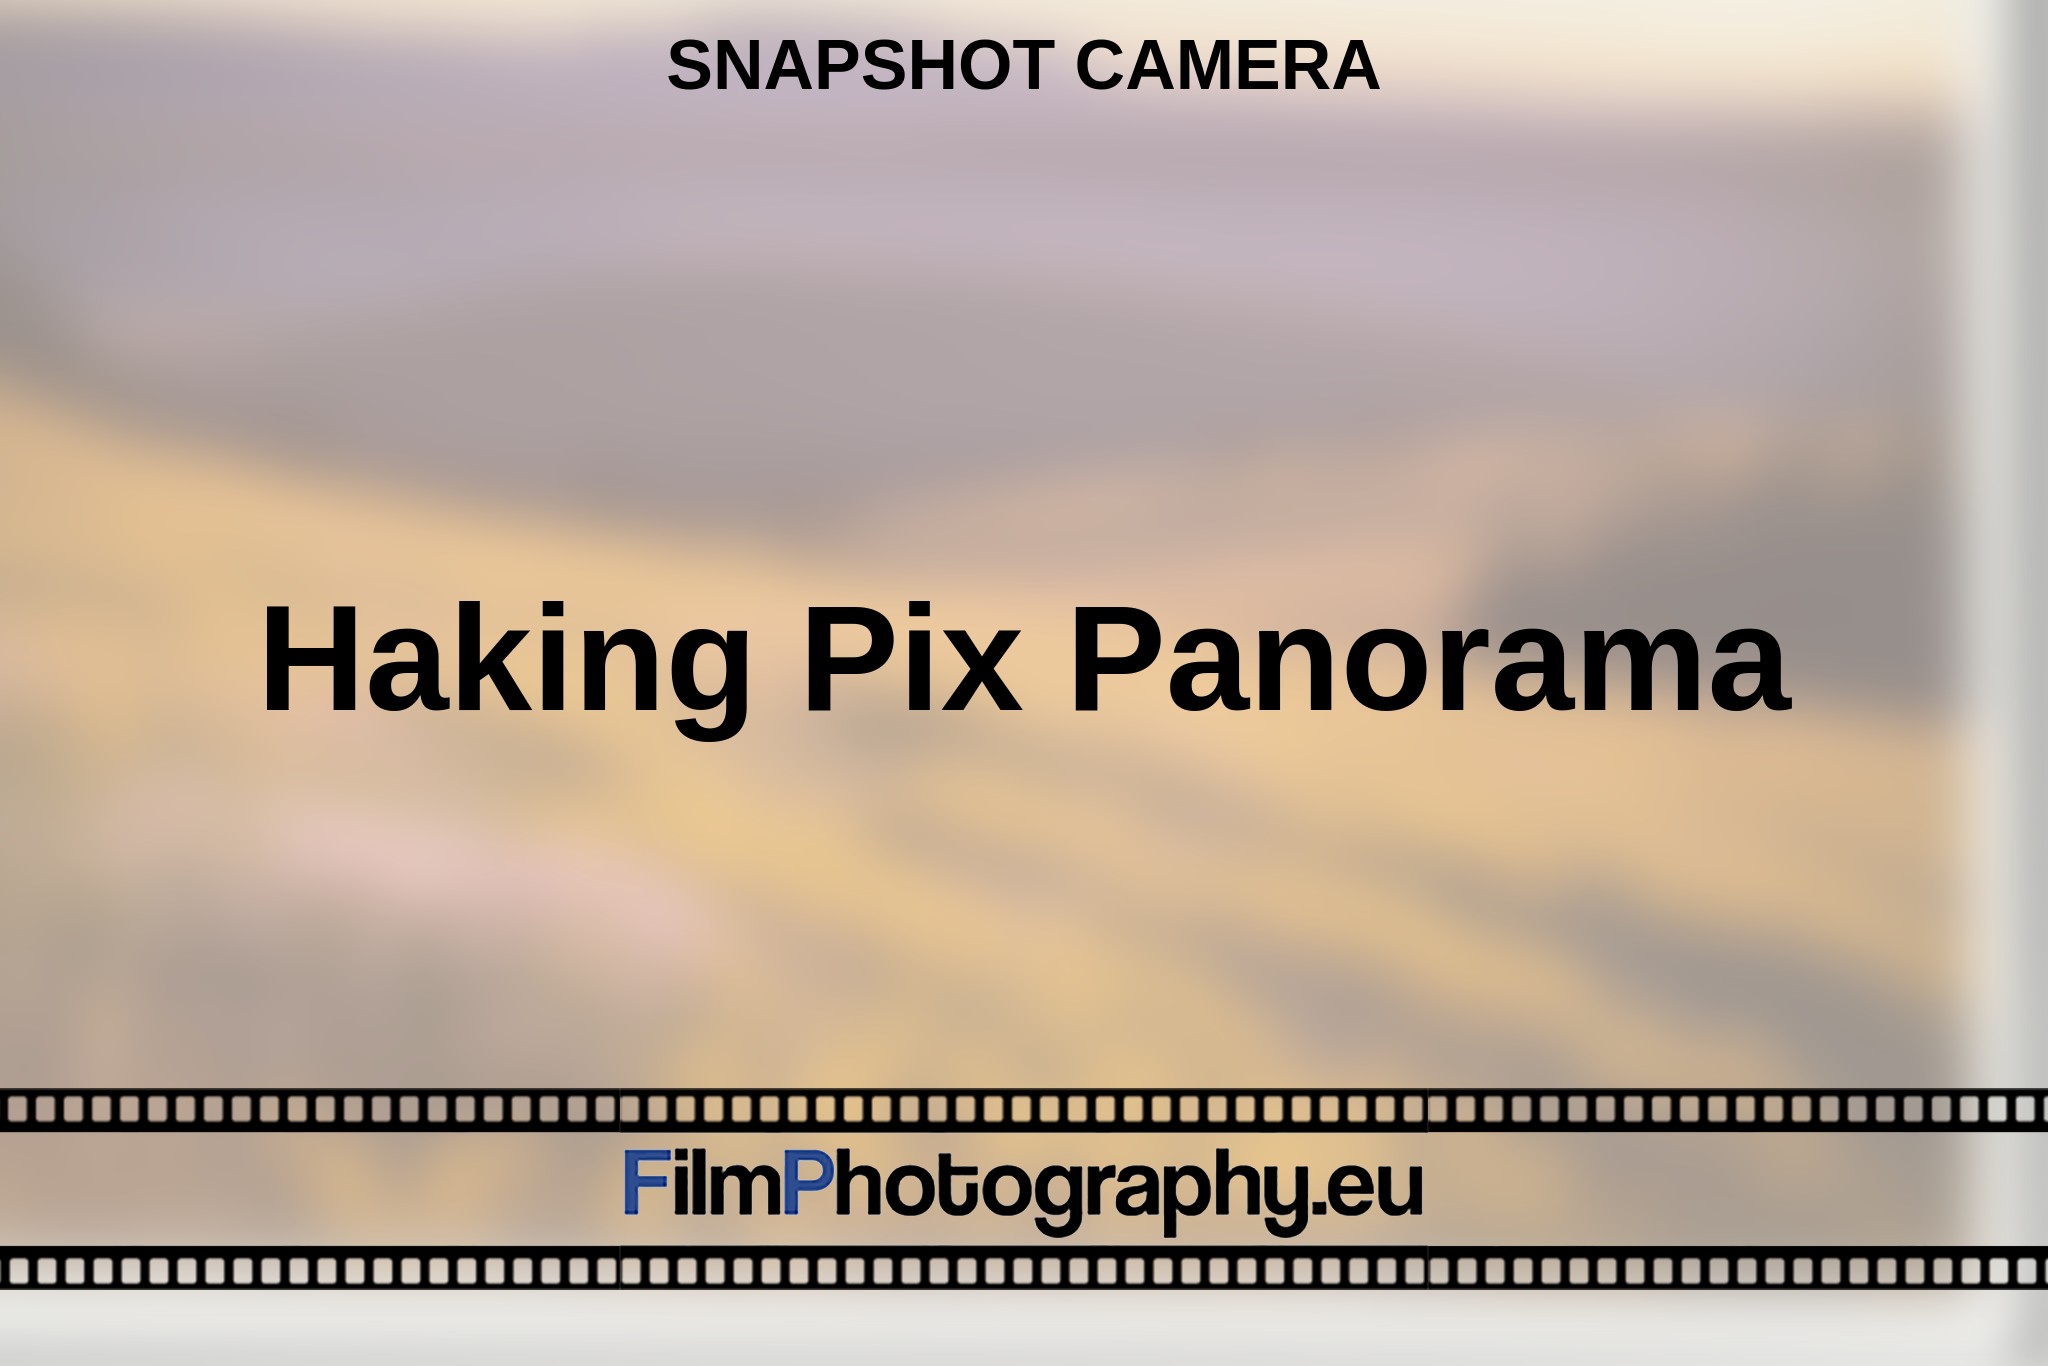 haking-pix-panorama-snapshot-camera-bnv.jpg